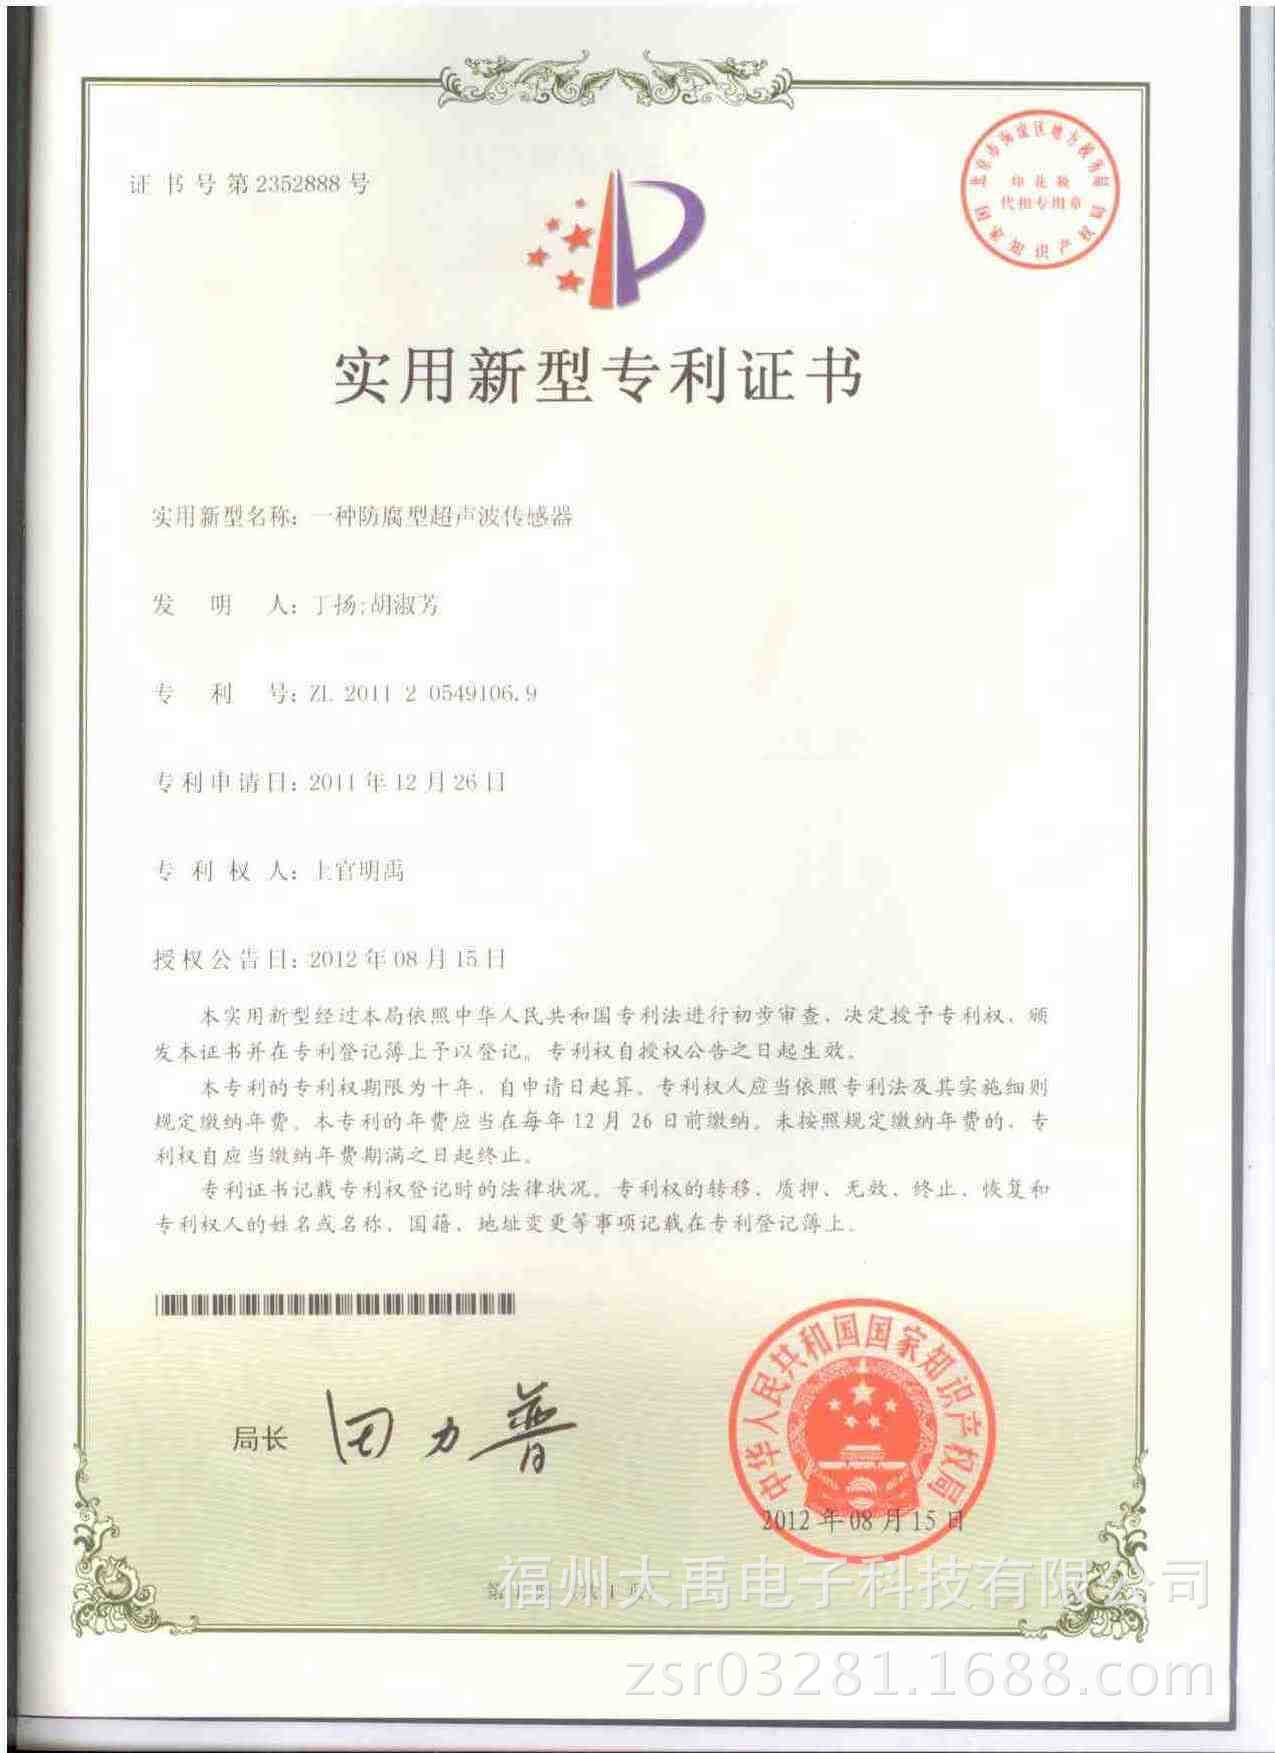 DY-超音波防腐傳感器專利證書